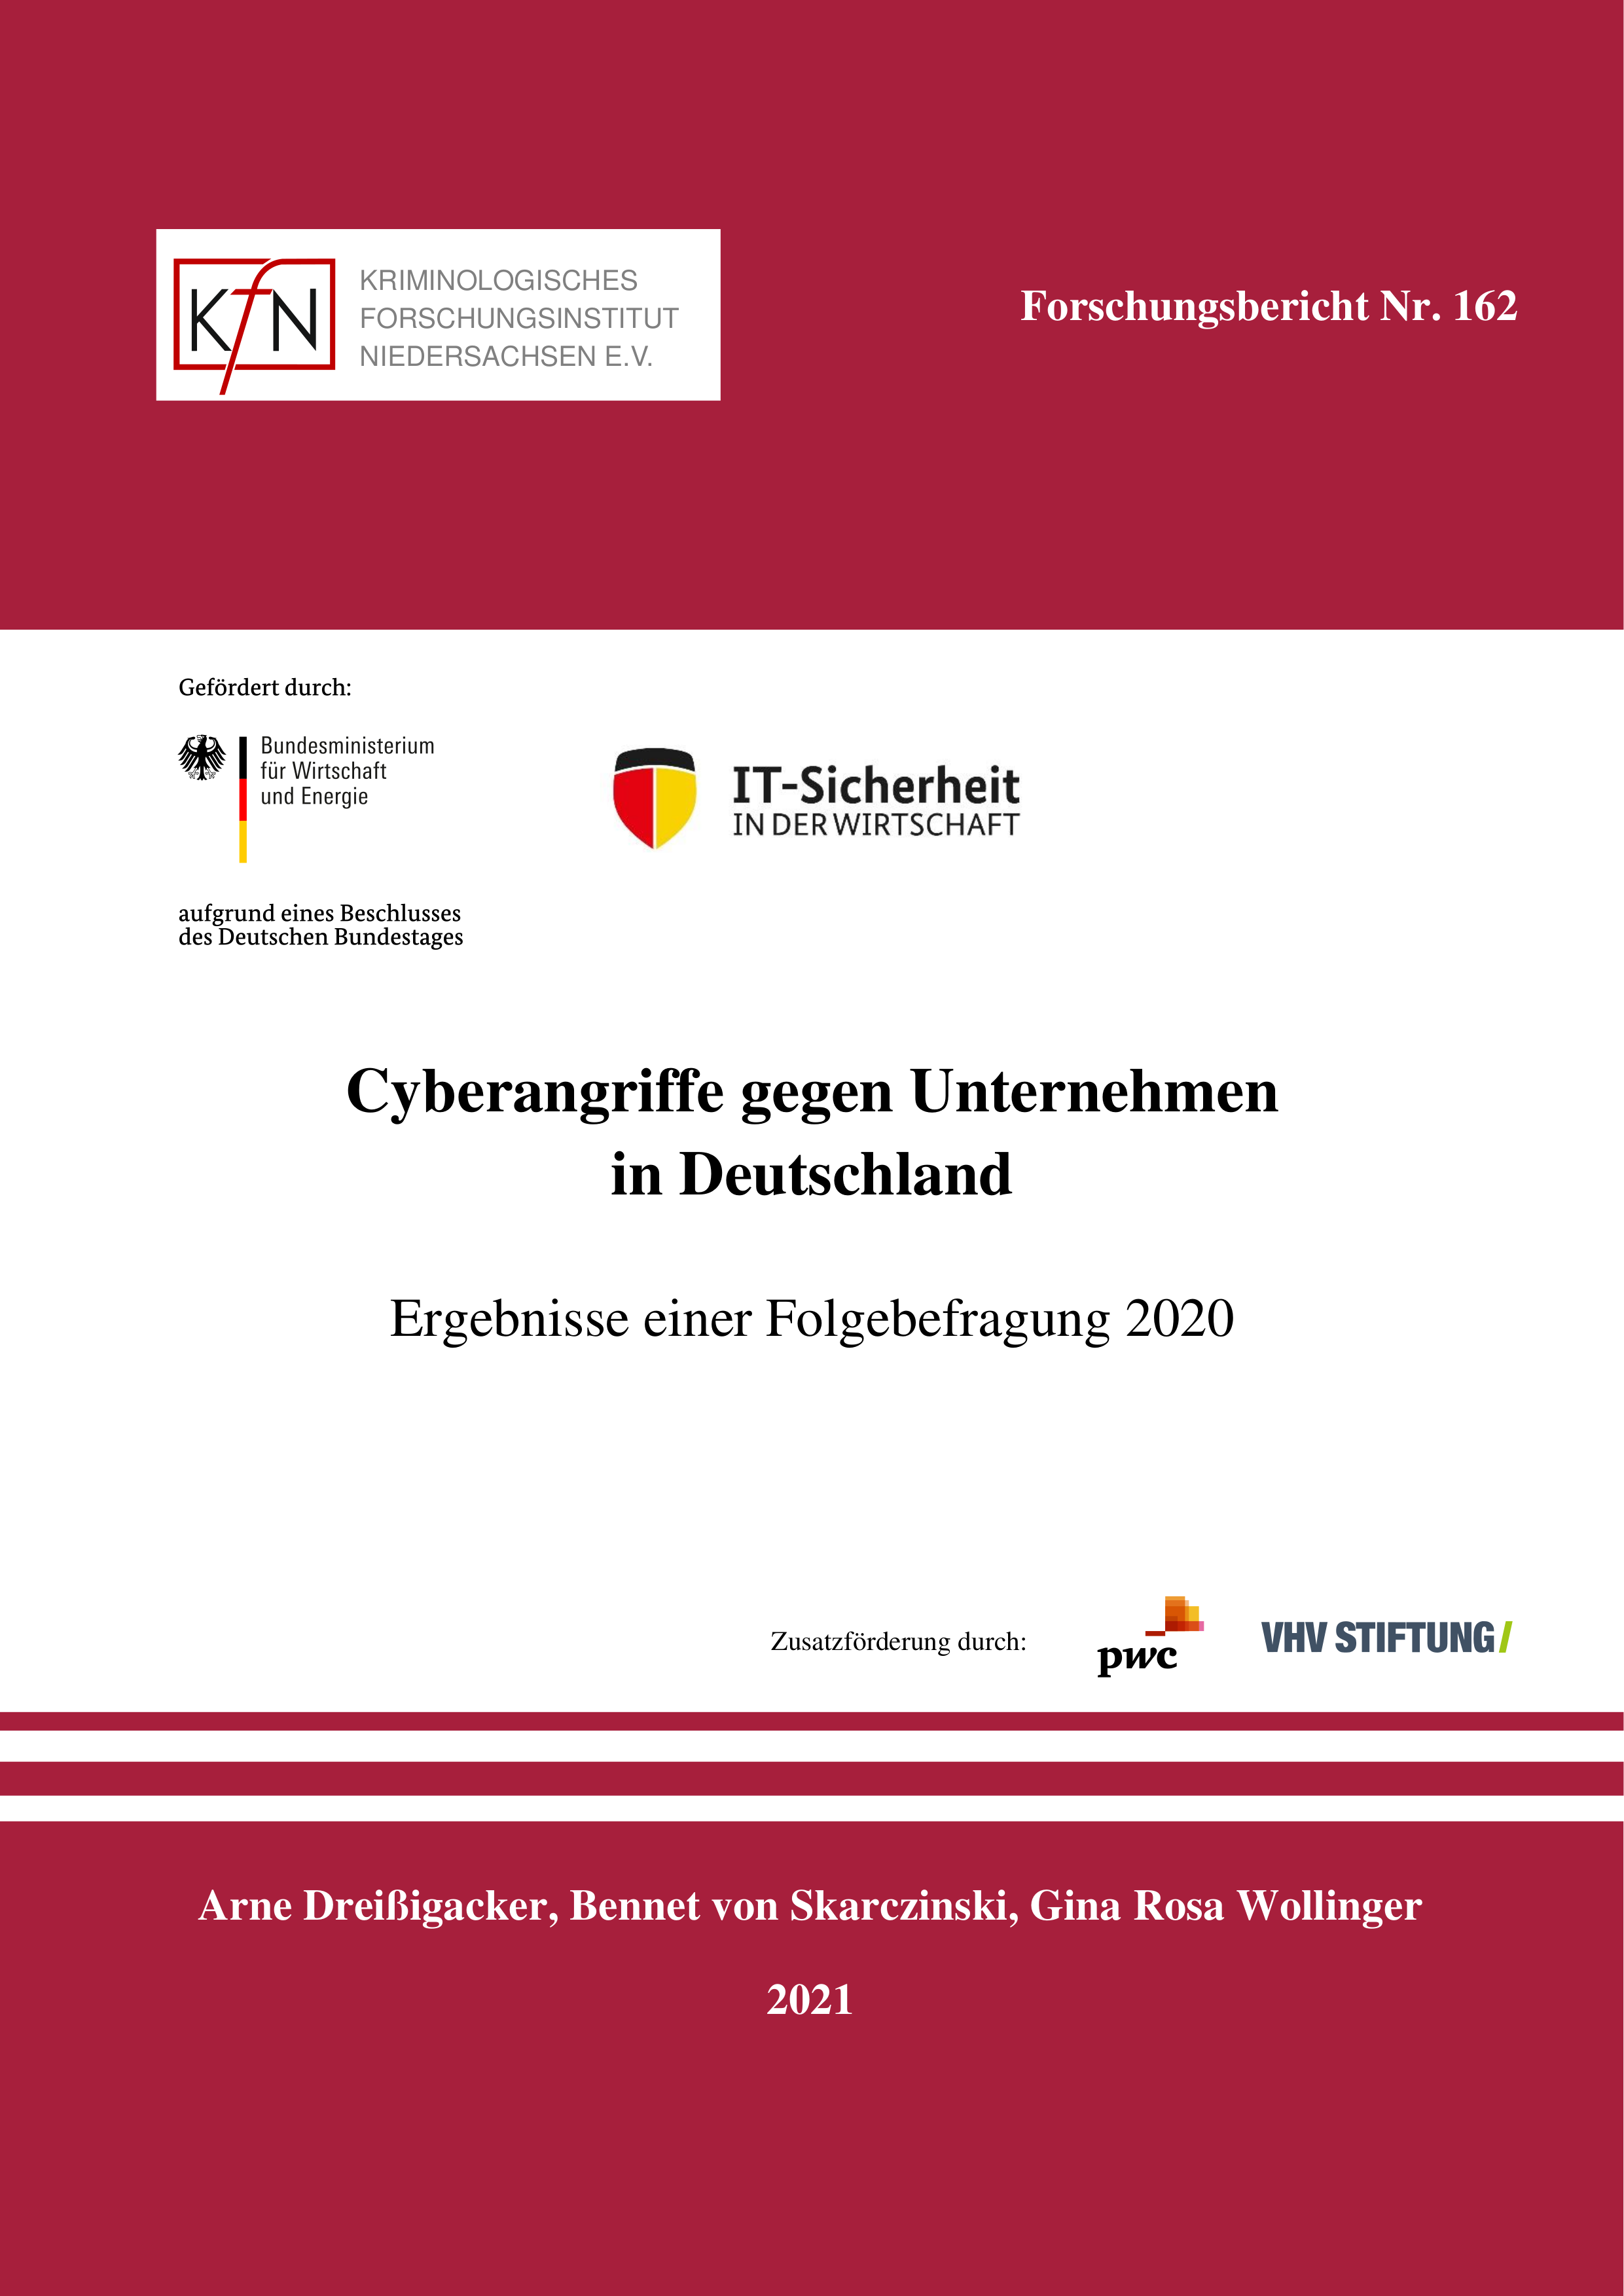 Cyberangriffe_gegen_Unternehmen_FB2